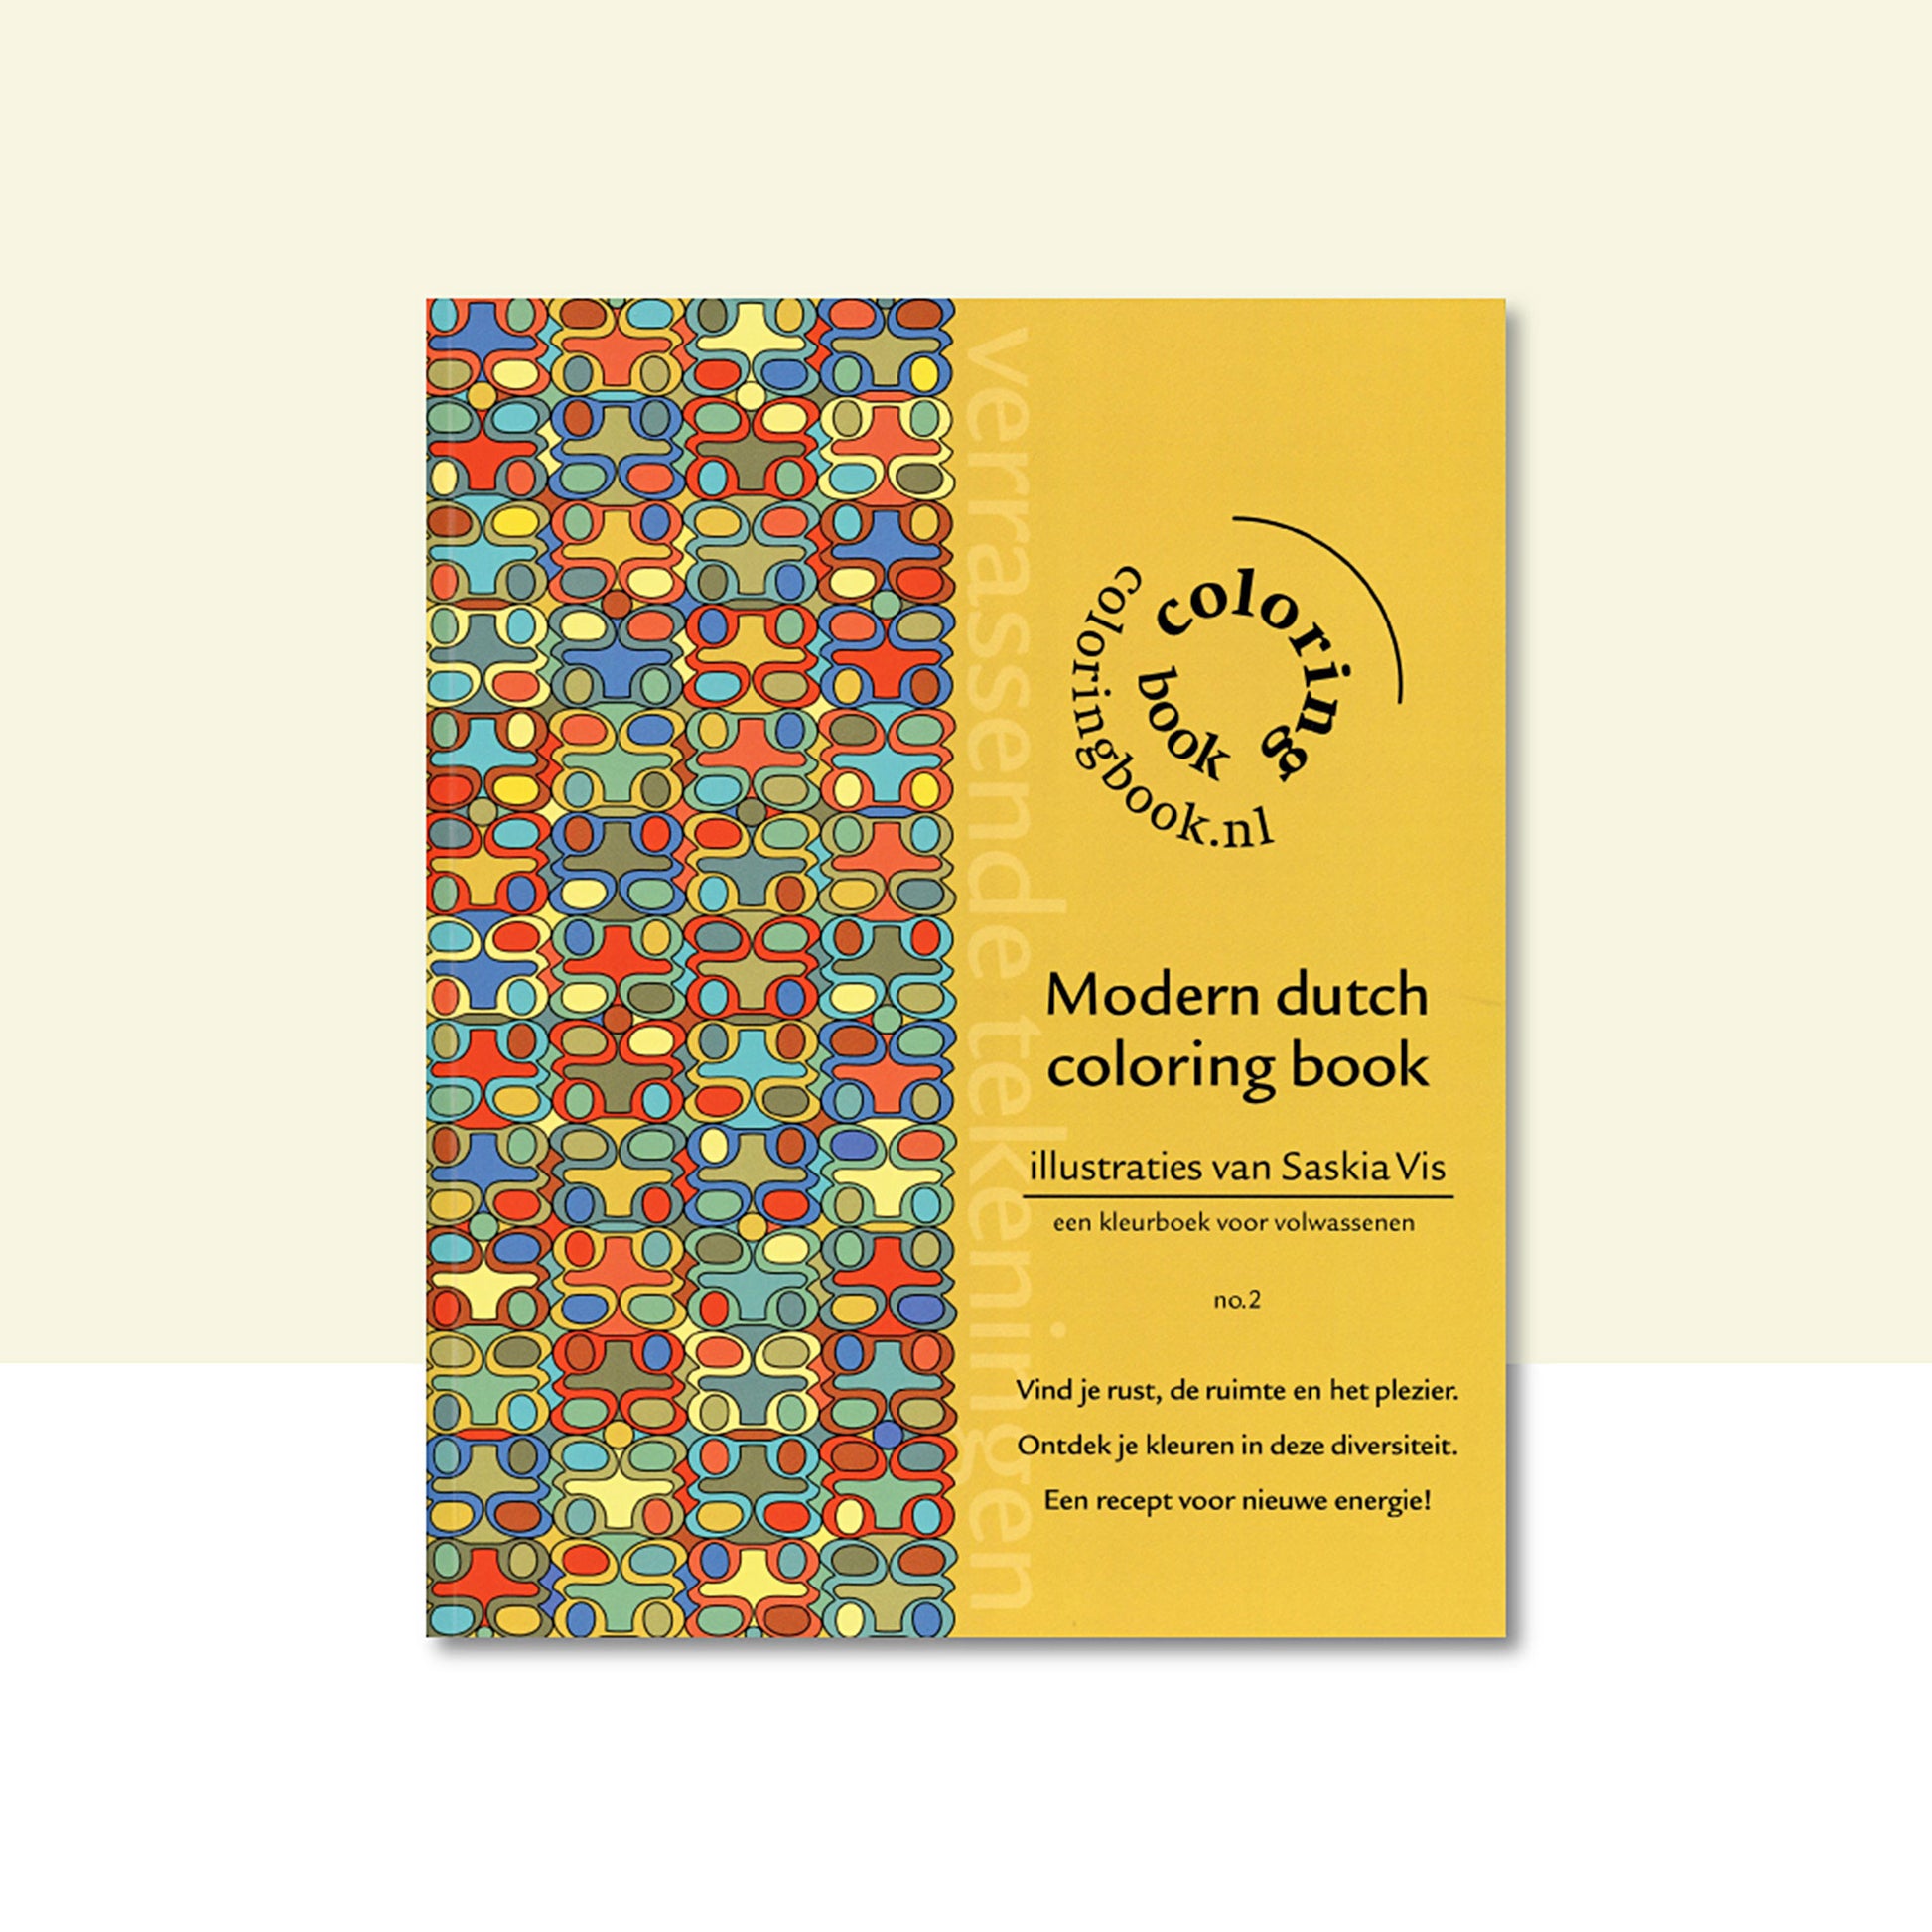 Productafbeelding "modern dutch coloring book" nr.2 met de voorzijde omslag in beeld